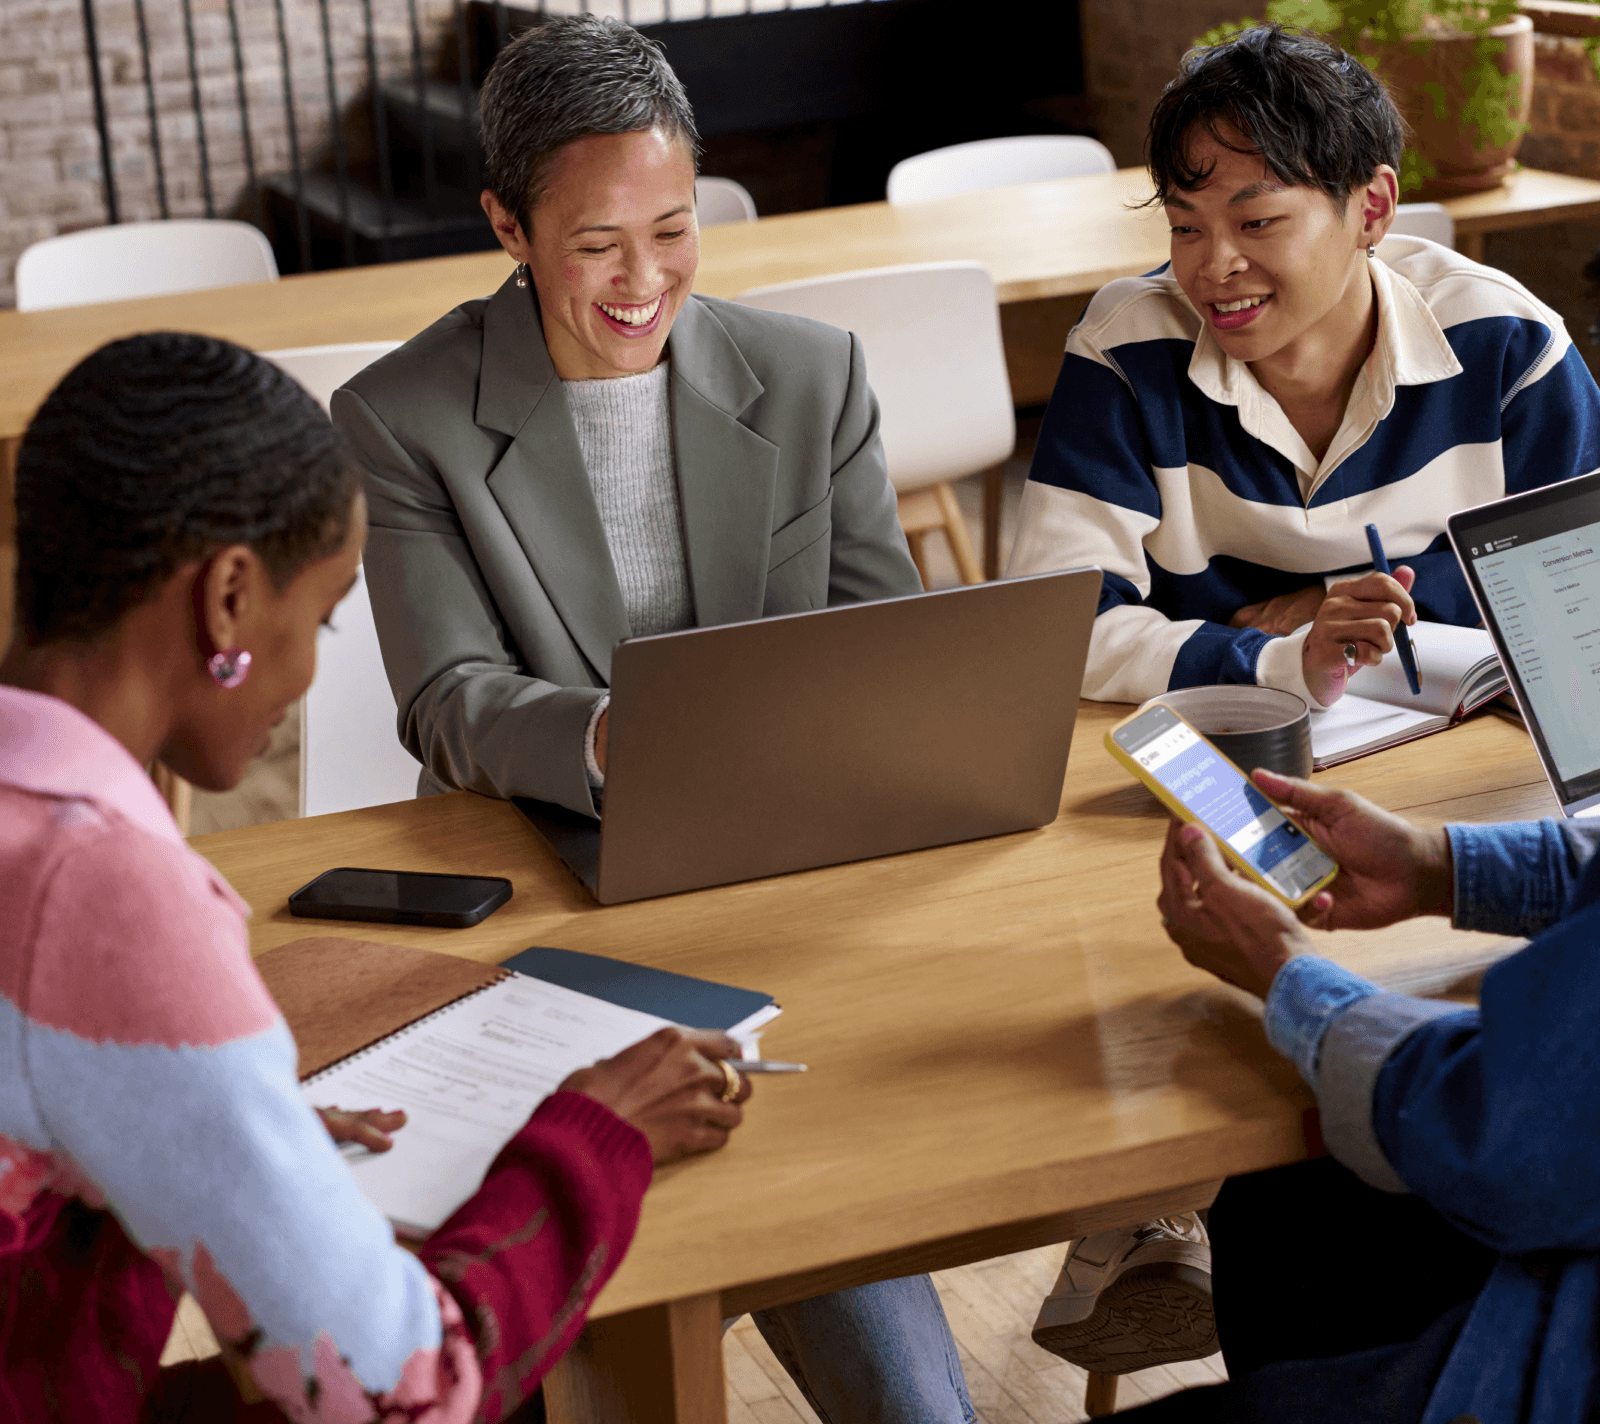 Bild mit lächelnden Arbeitskollegen, die mit Laptop, Smartphones und Notizblöcken in den Händen an einem Besprechungstisch sitzen.